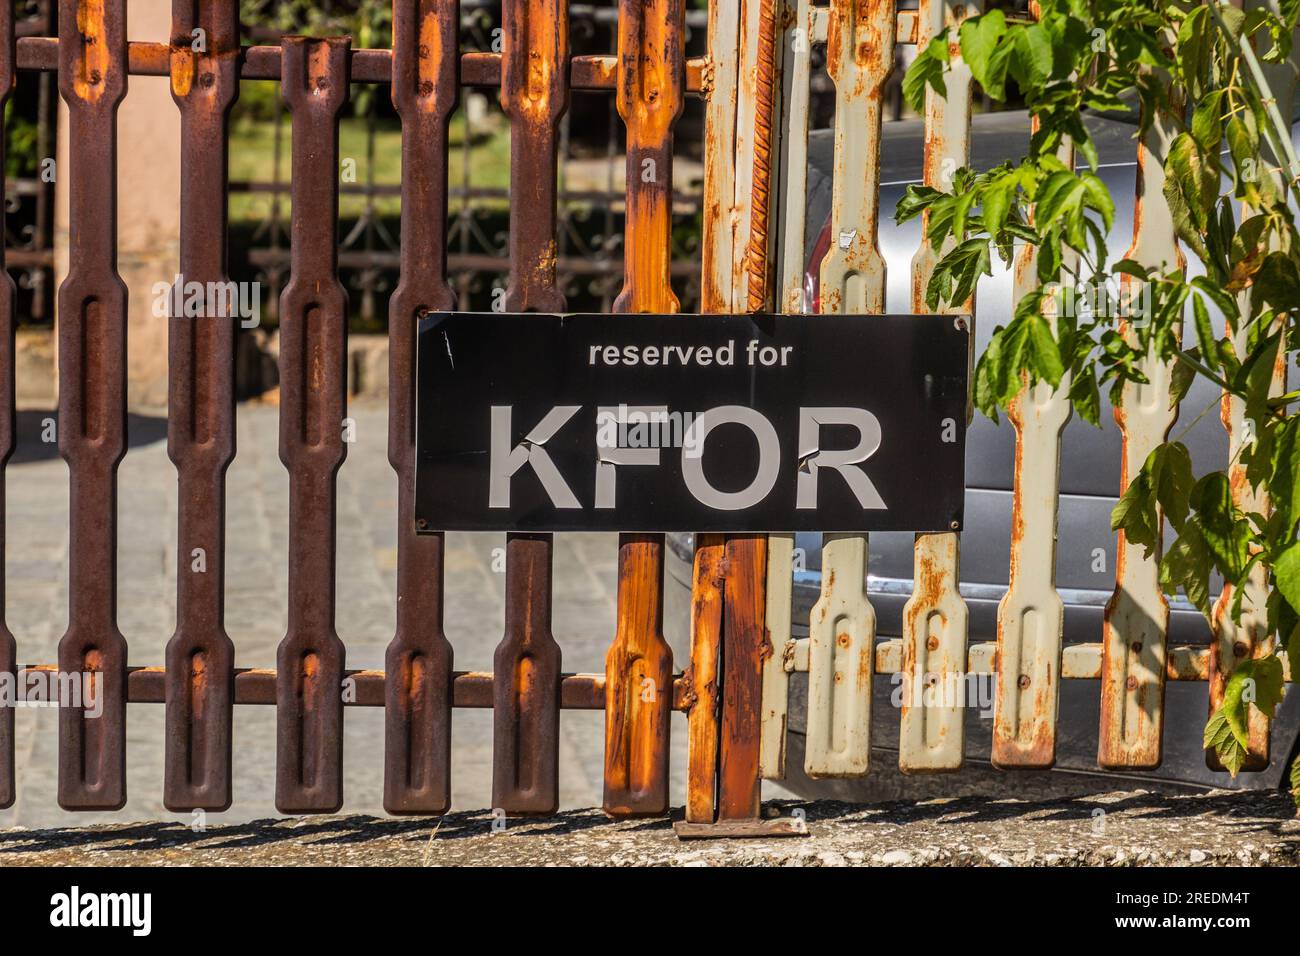 Sign Reserved for KFOR in Pristina, Kosovo Stock Photo